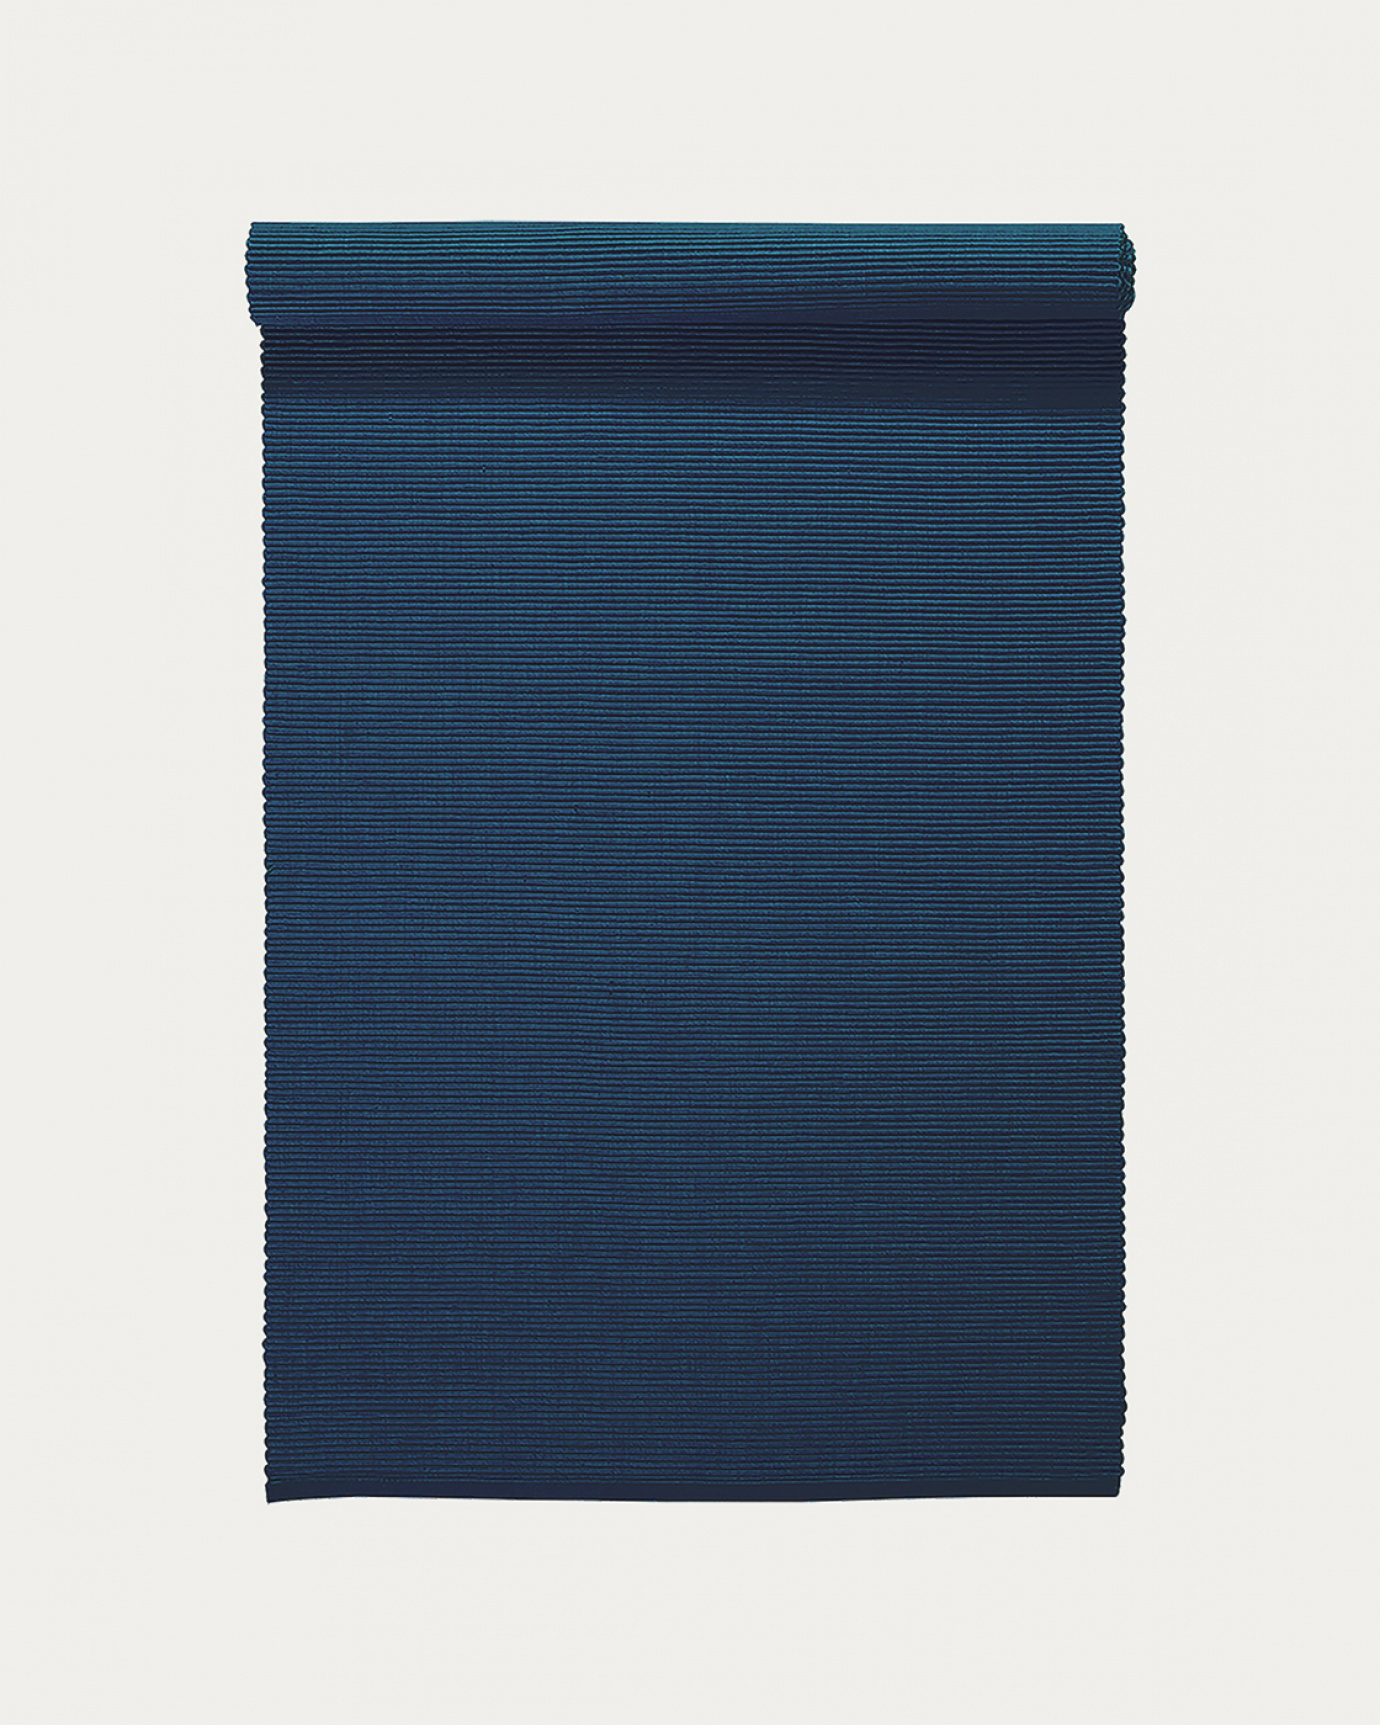 Produktbild indigoblau UNI Tischläufer aus weicher Baumwolle in Rippenqualität von LINUM DESIGN. Größe 45x150 cm.